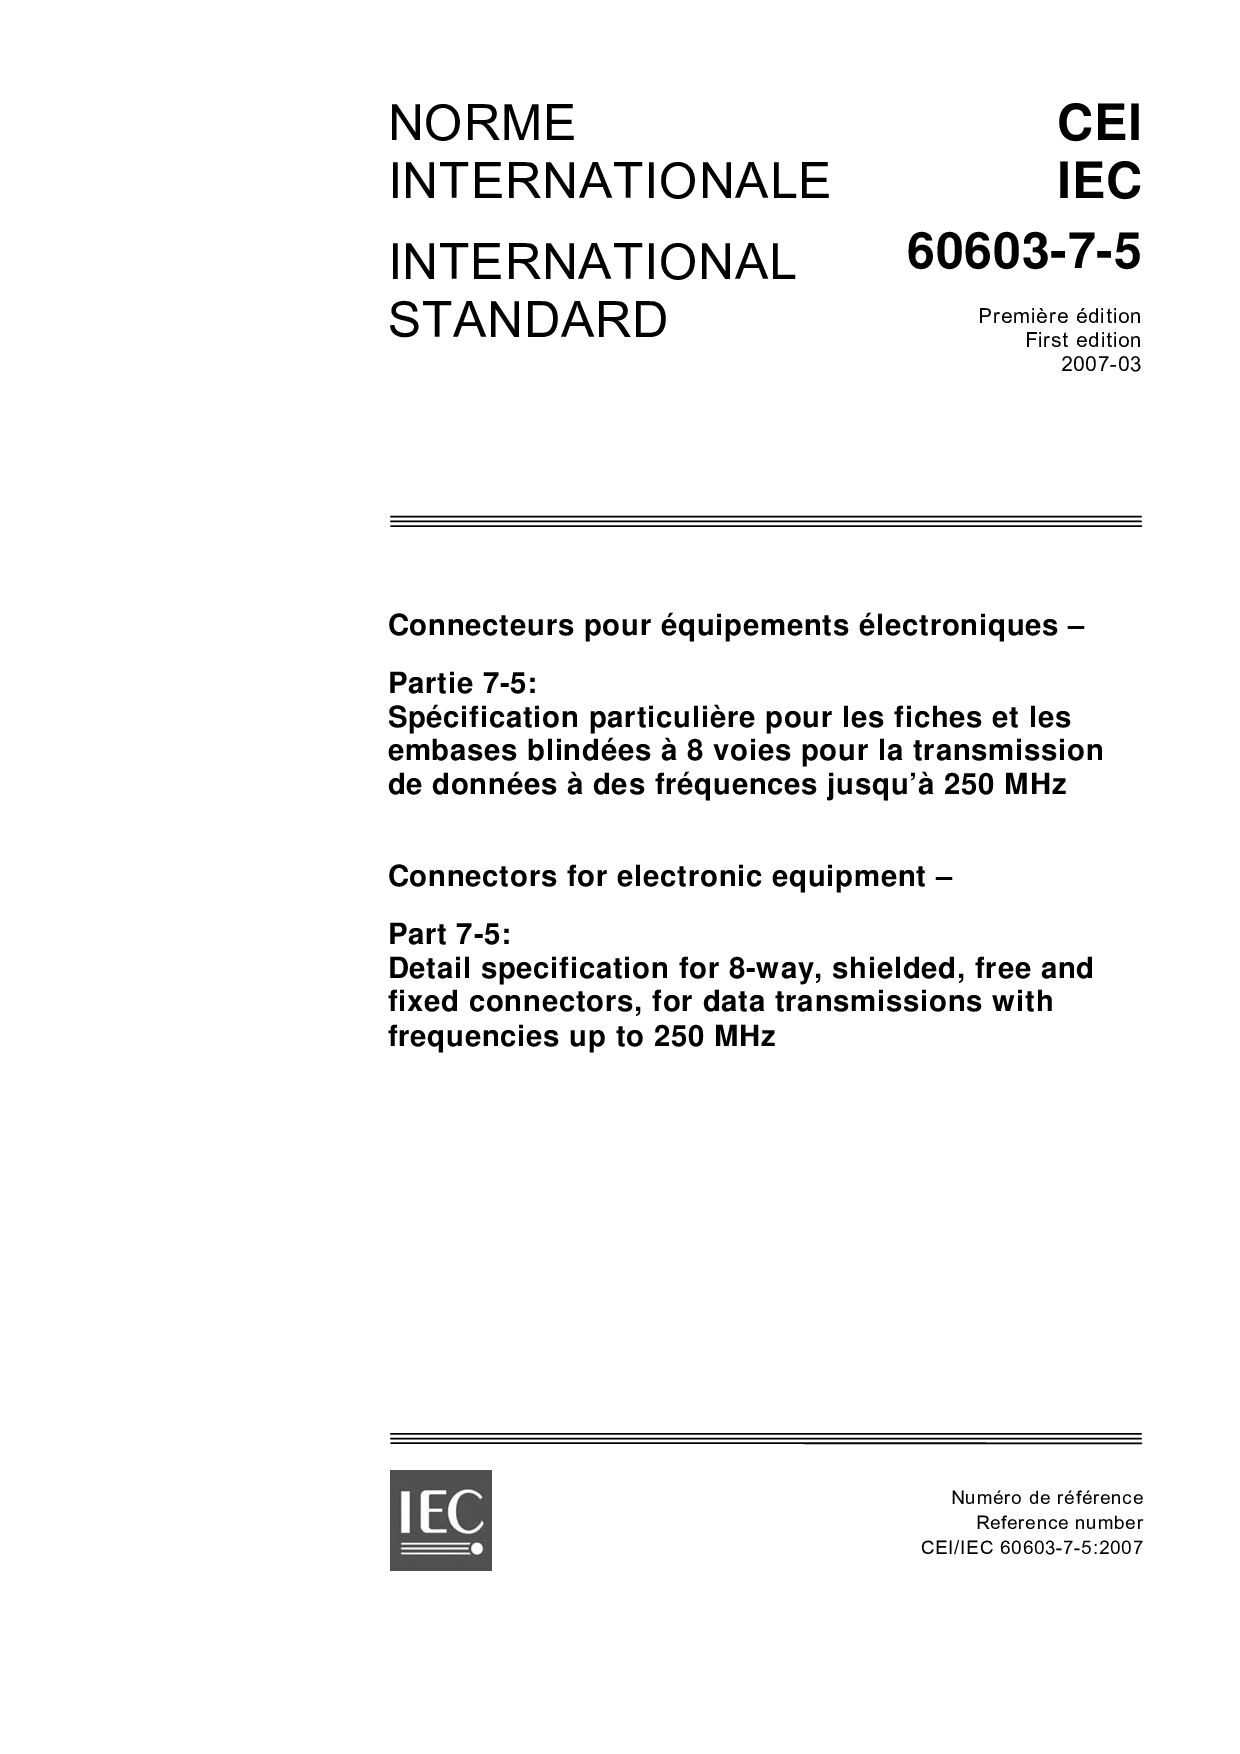 IEC 60603-7-5:2007